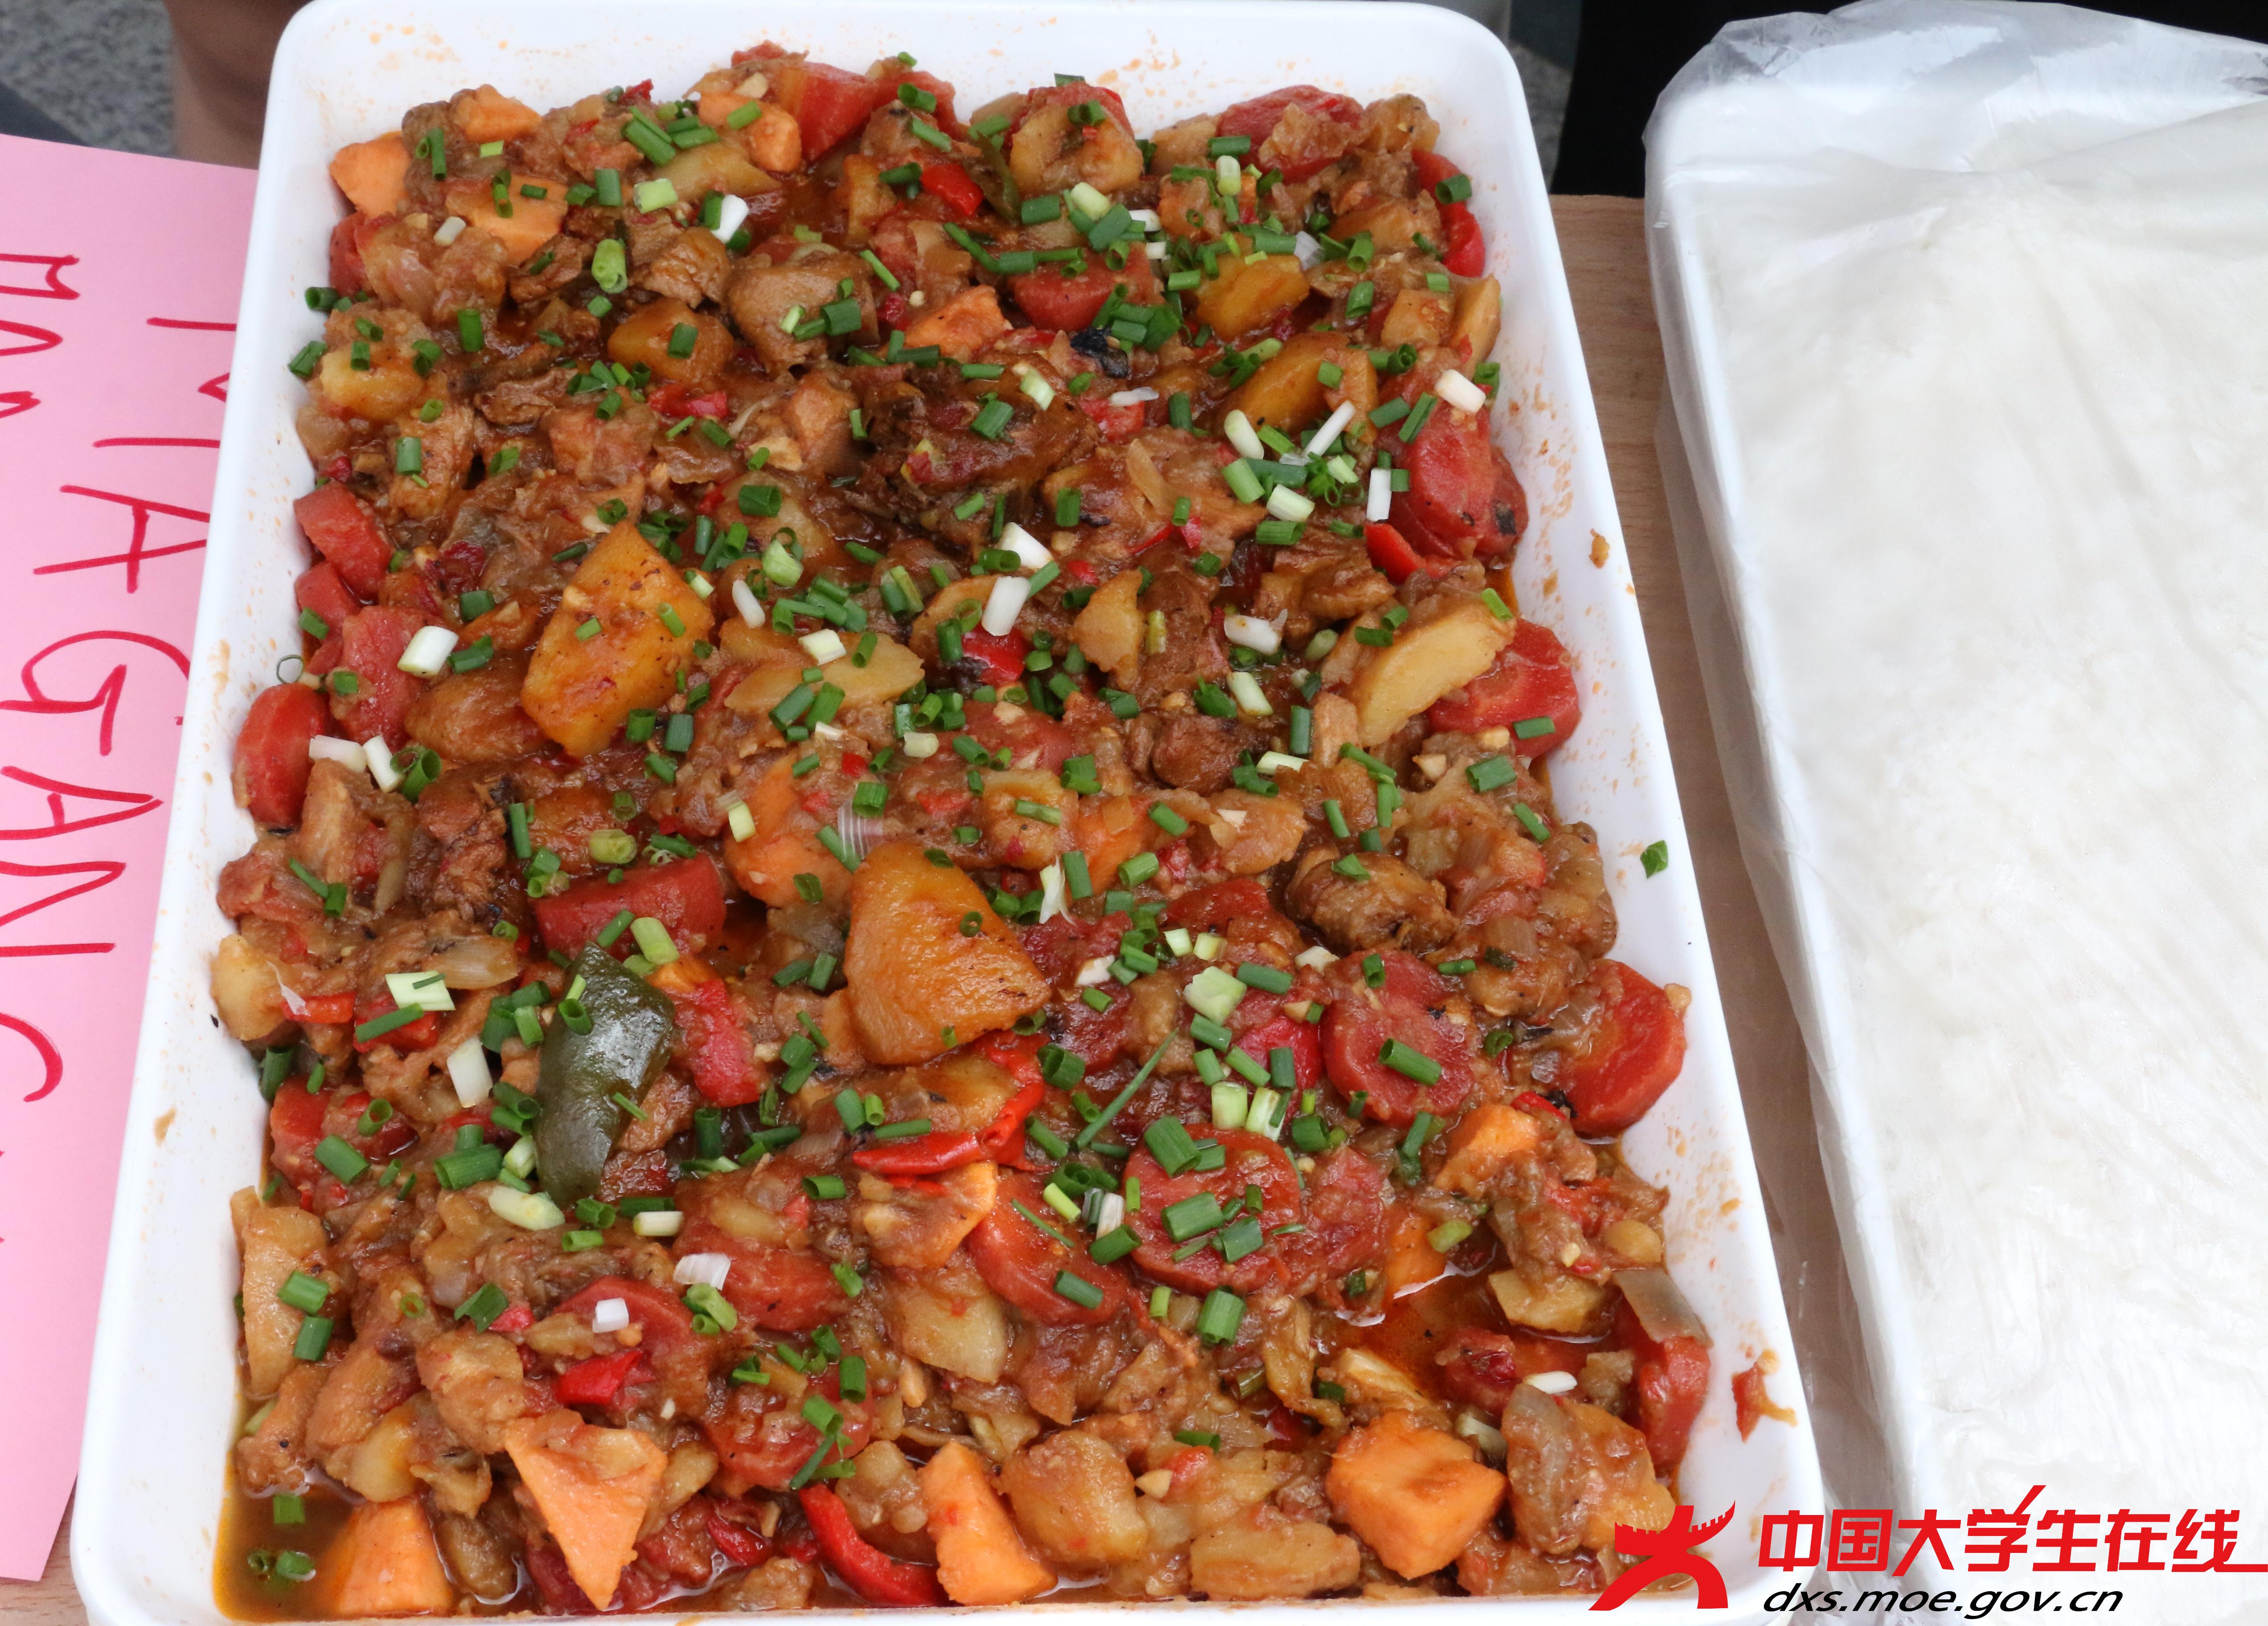 巴基斯坦人喜欢吃香辣的食品，他们用胡椒、姜黄等做的咖哩食品闻名世界。土豆烩羊肉这道羊肉咖喱的菜品，它的做法简单，味道浓郁，使用玛萨拉料、肉桂、香叶、小豆蔻、姜和洋葱调味，是最能代表巴基斯坦饮食风味的菜品。  杨雪莲 摄